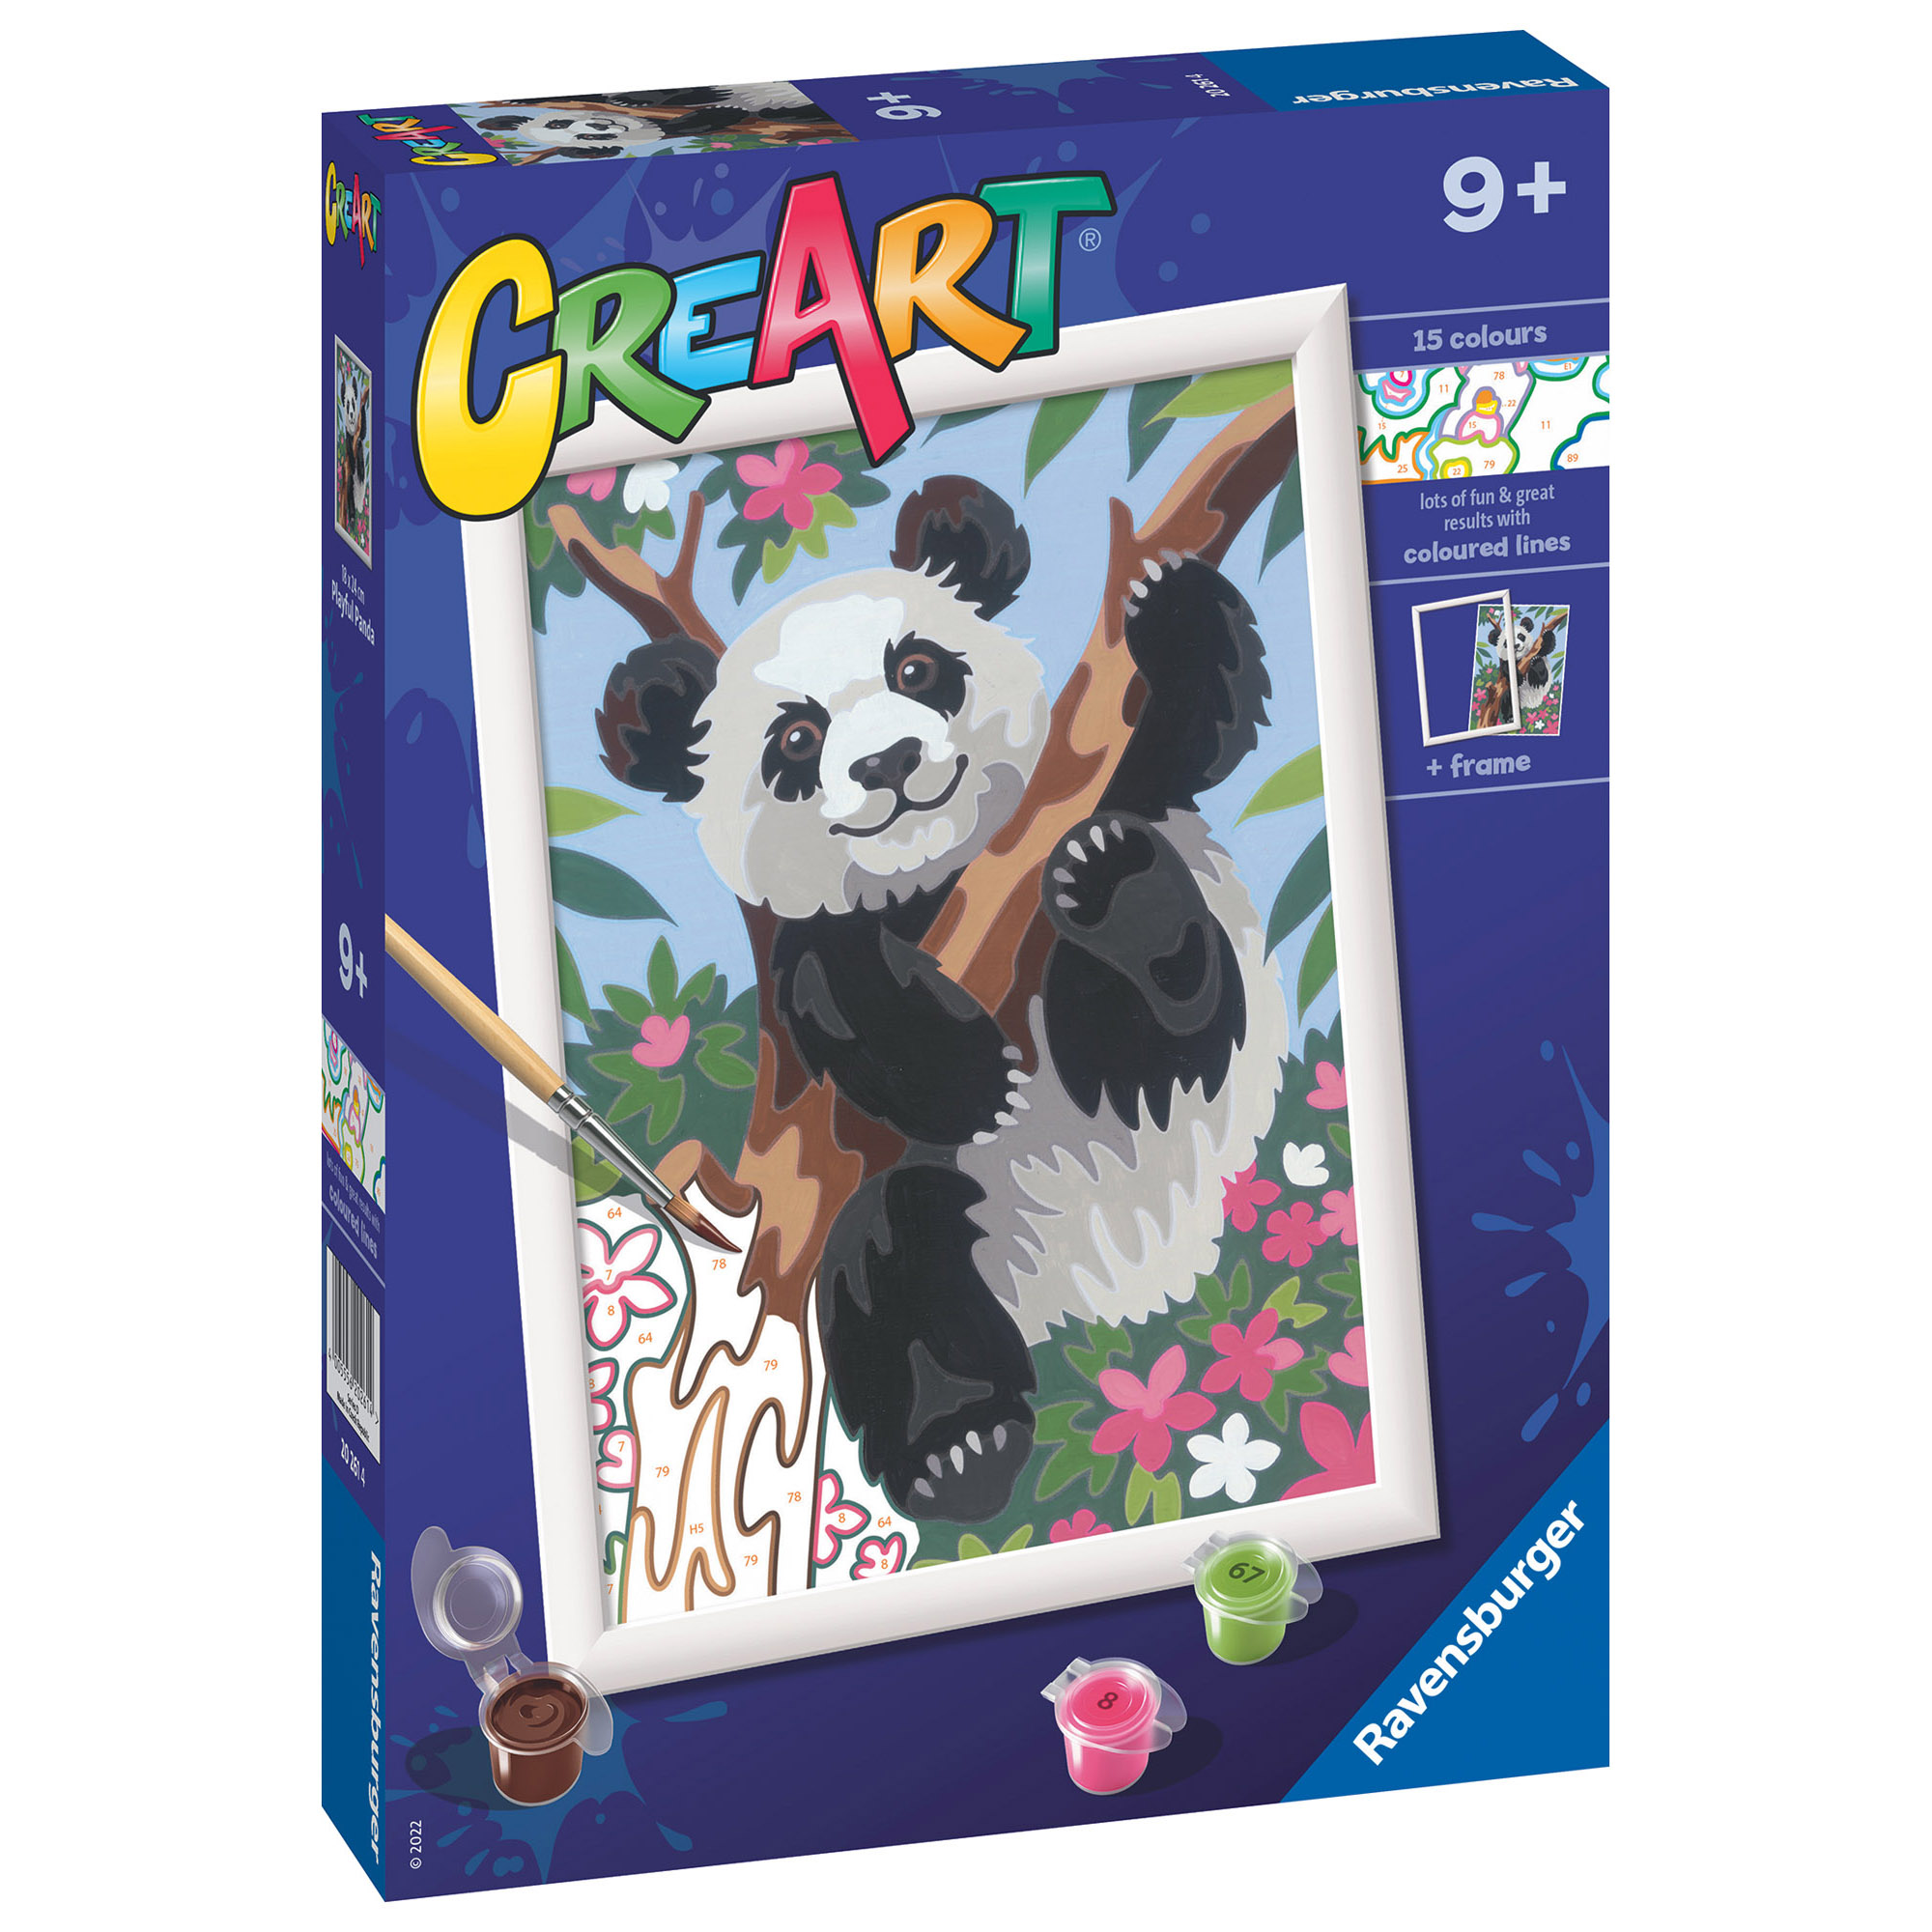 Ravensburger - creart serie d: panda, kit per dipingere con i numeri, contiene una tavola prestampata, pennello, colori e accessori, gioco creativo per bambini 9+ anni - CREART